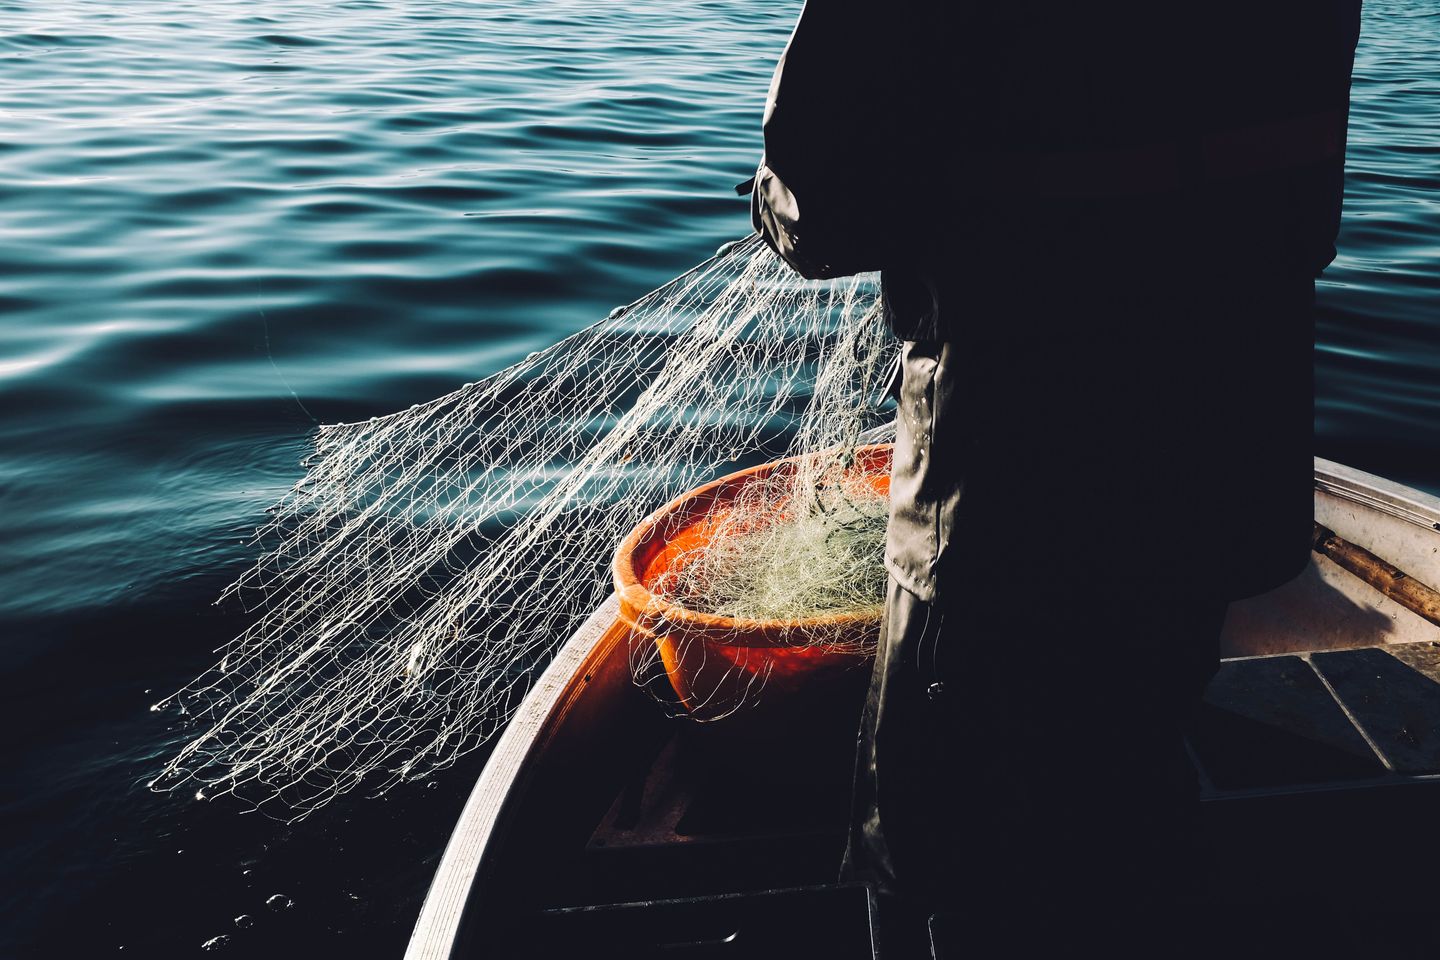 Resuelve el problema: lámparas fabricadas con redes de pesca recicladas